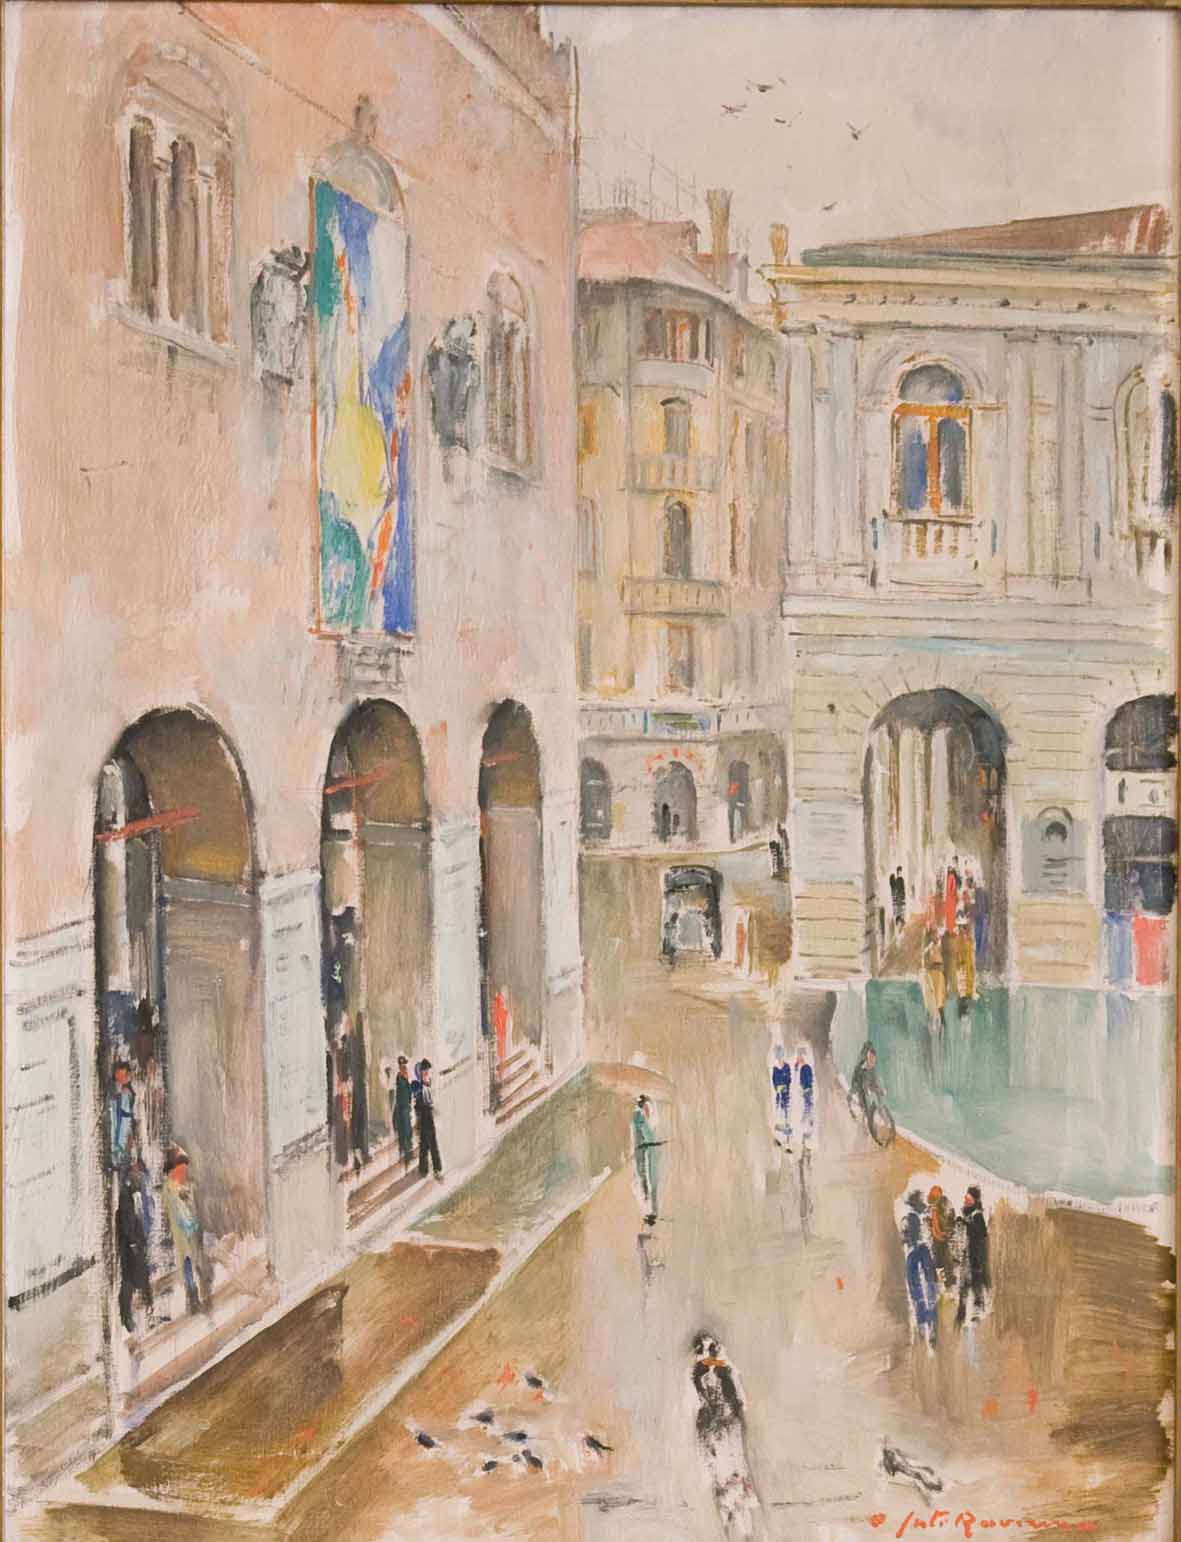 Juti Ravenna, Piazza dei Signori verso piazza Indipendenza (Piazza dei Signori sotto la pioggia), 1935